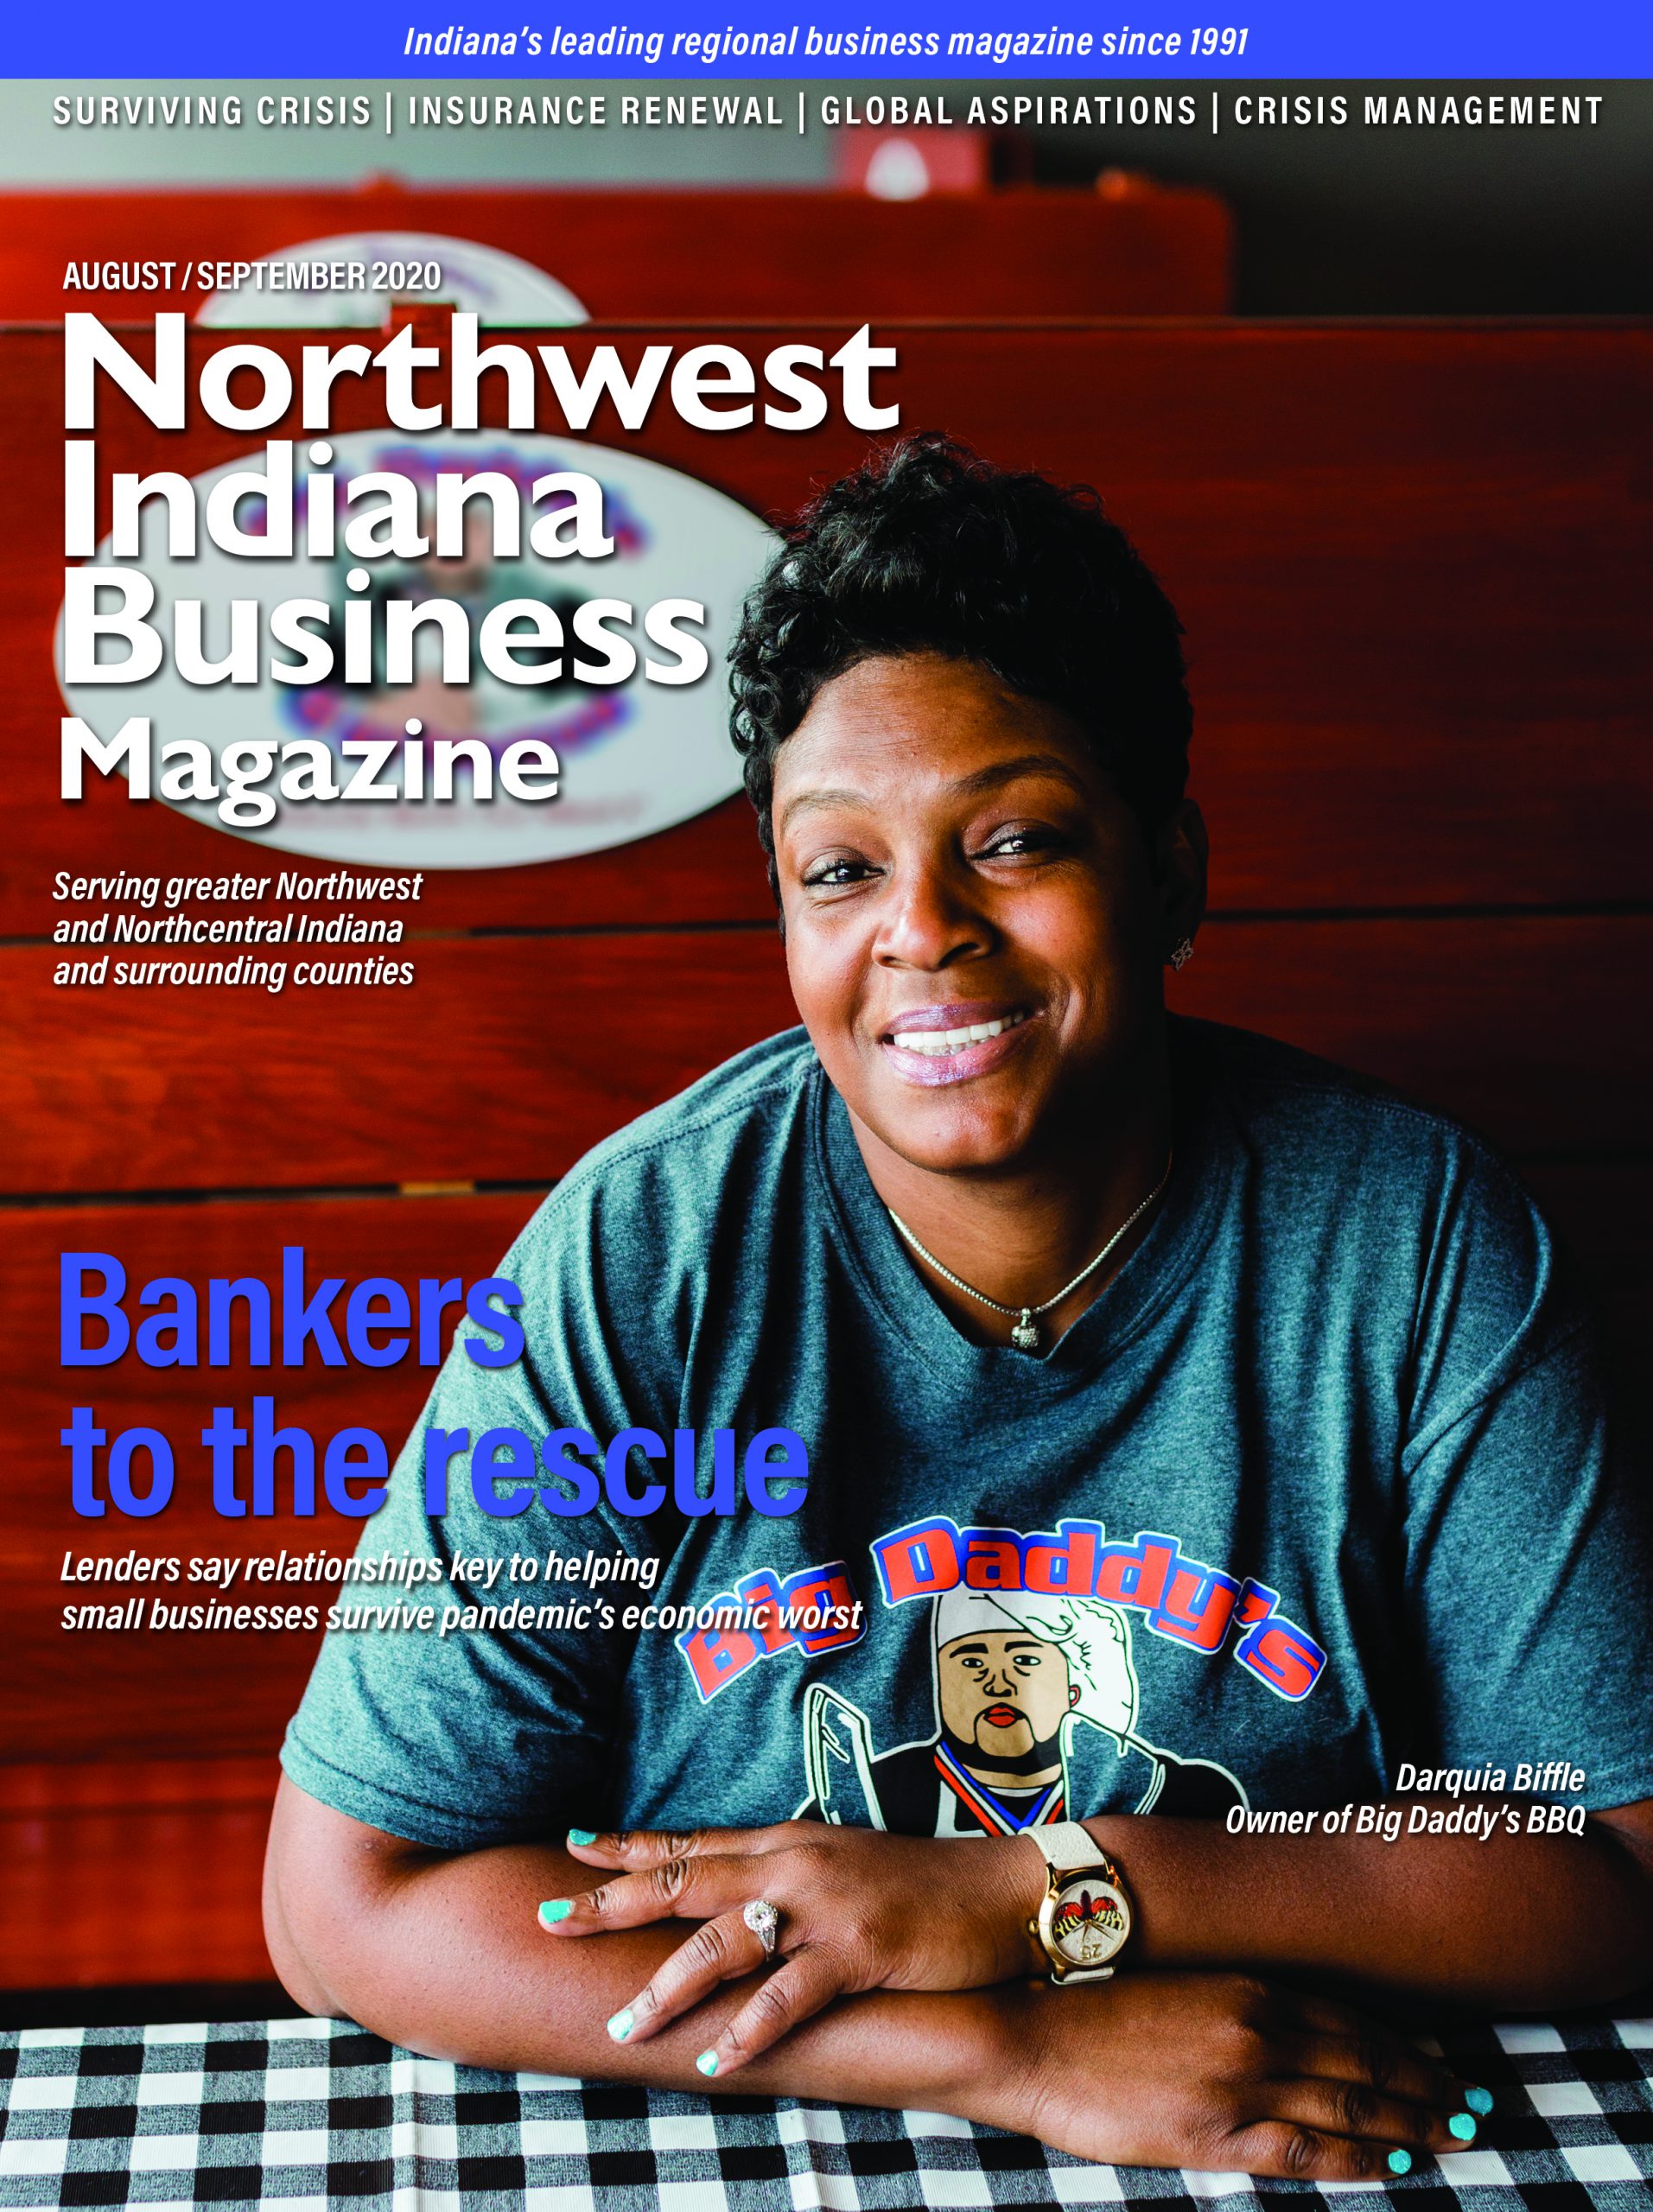 Northwest Indiana Business Magazine Aug-Sep 2020 issue